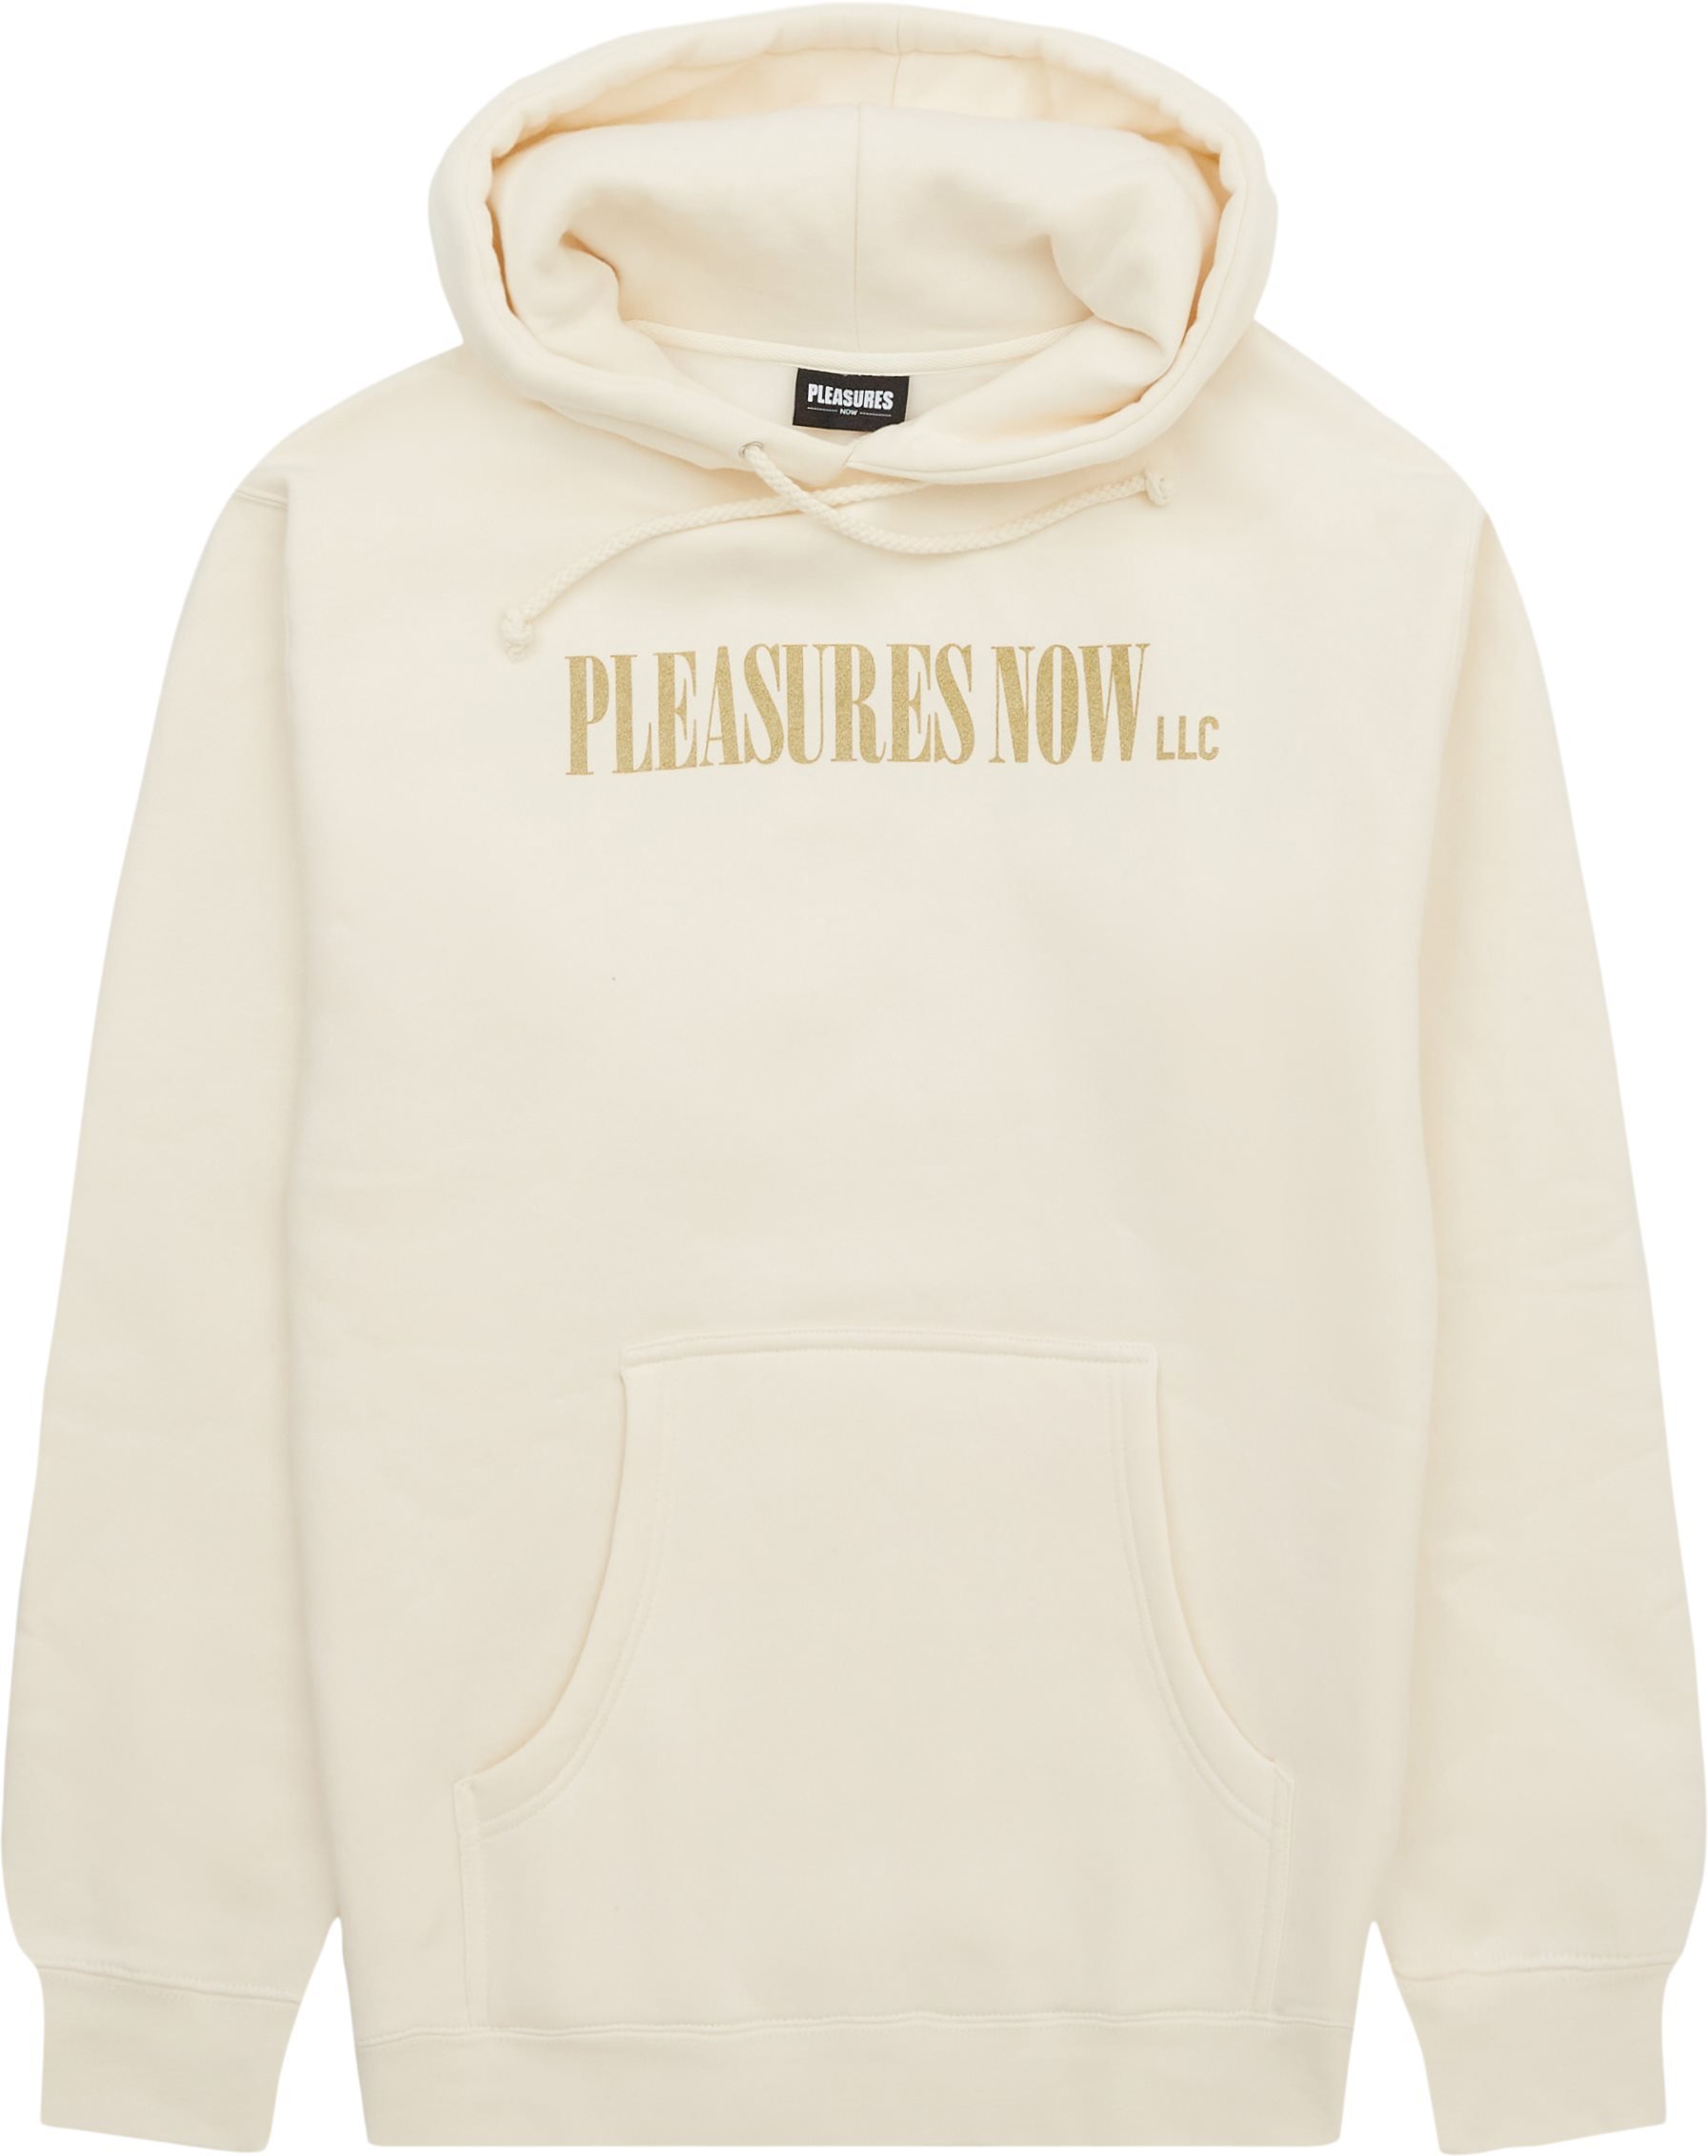 Pleasures Sweatshirts LLC HOODIE Sand